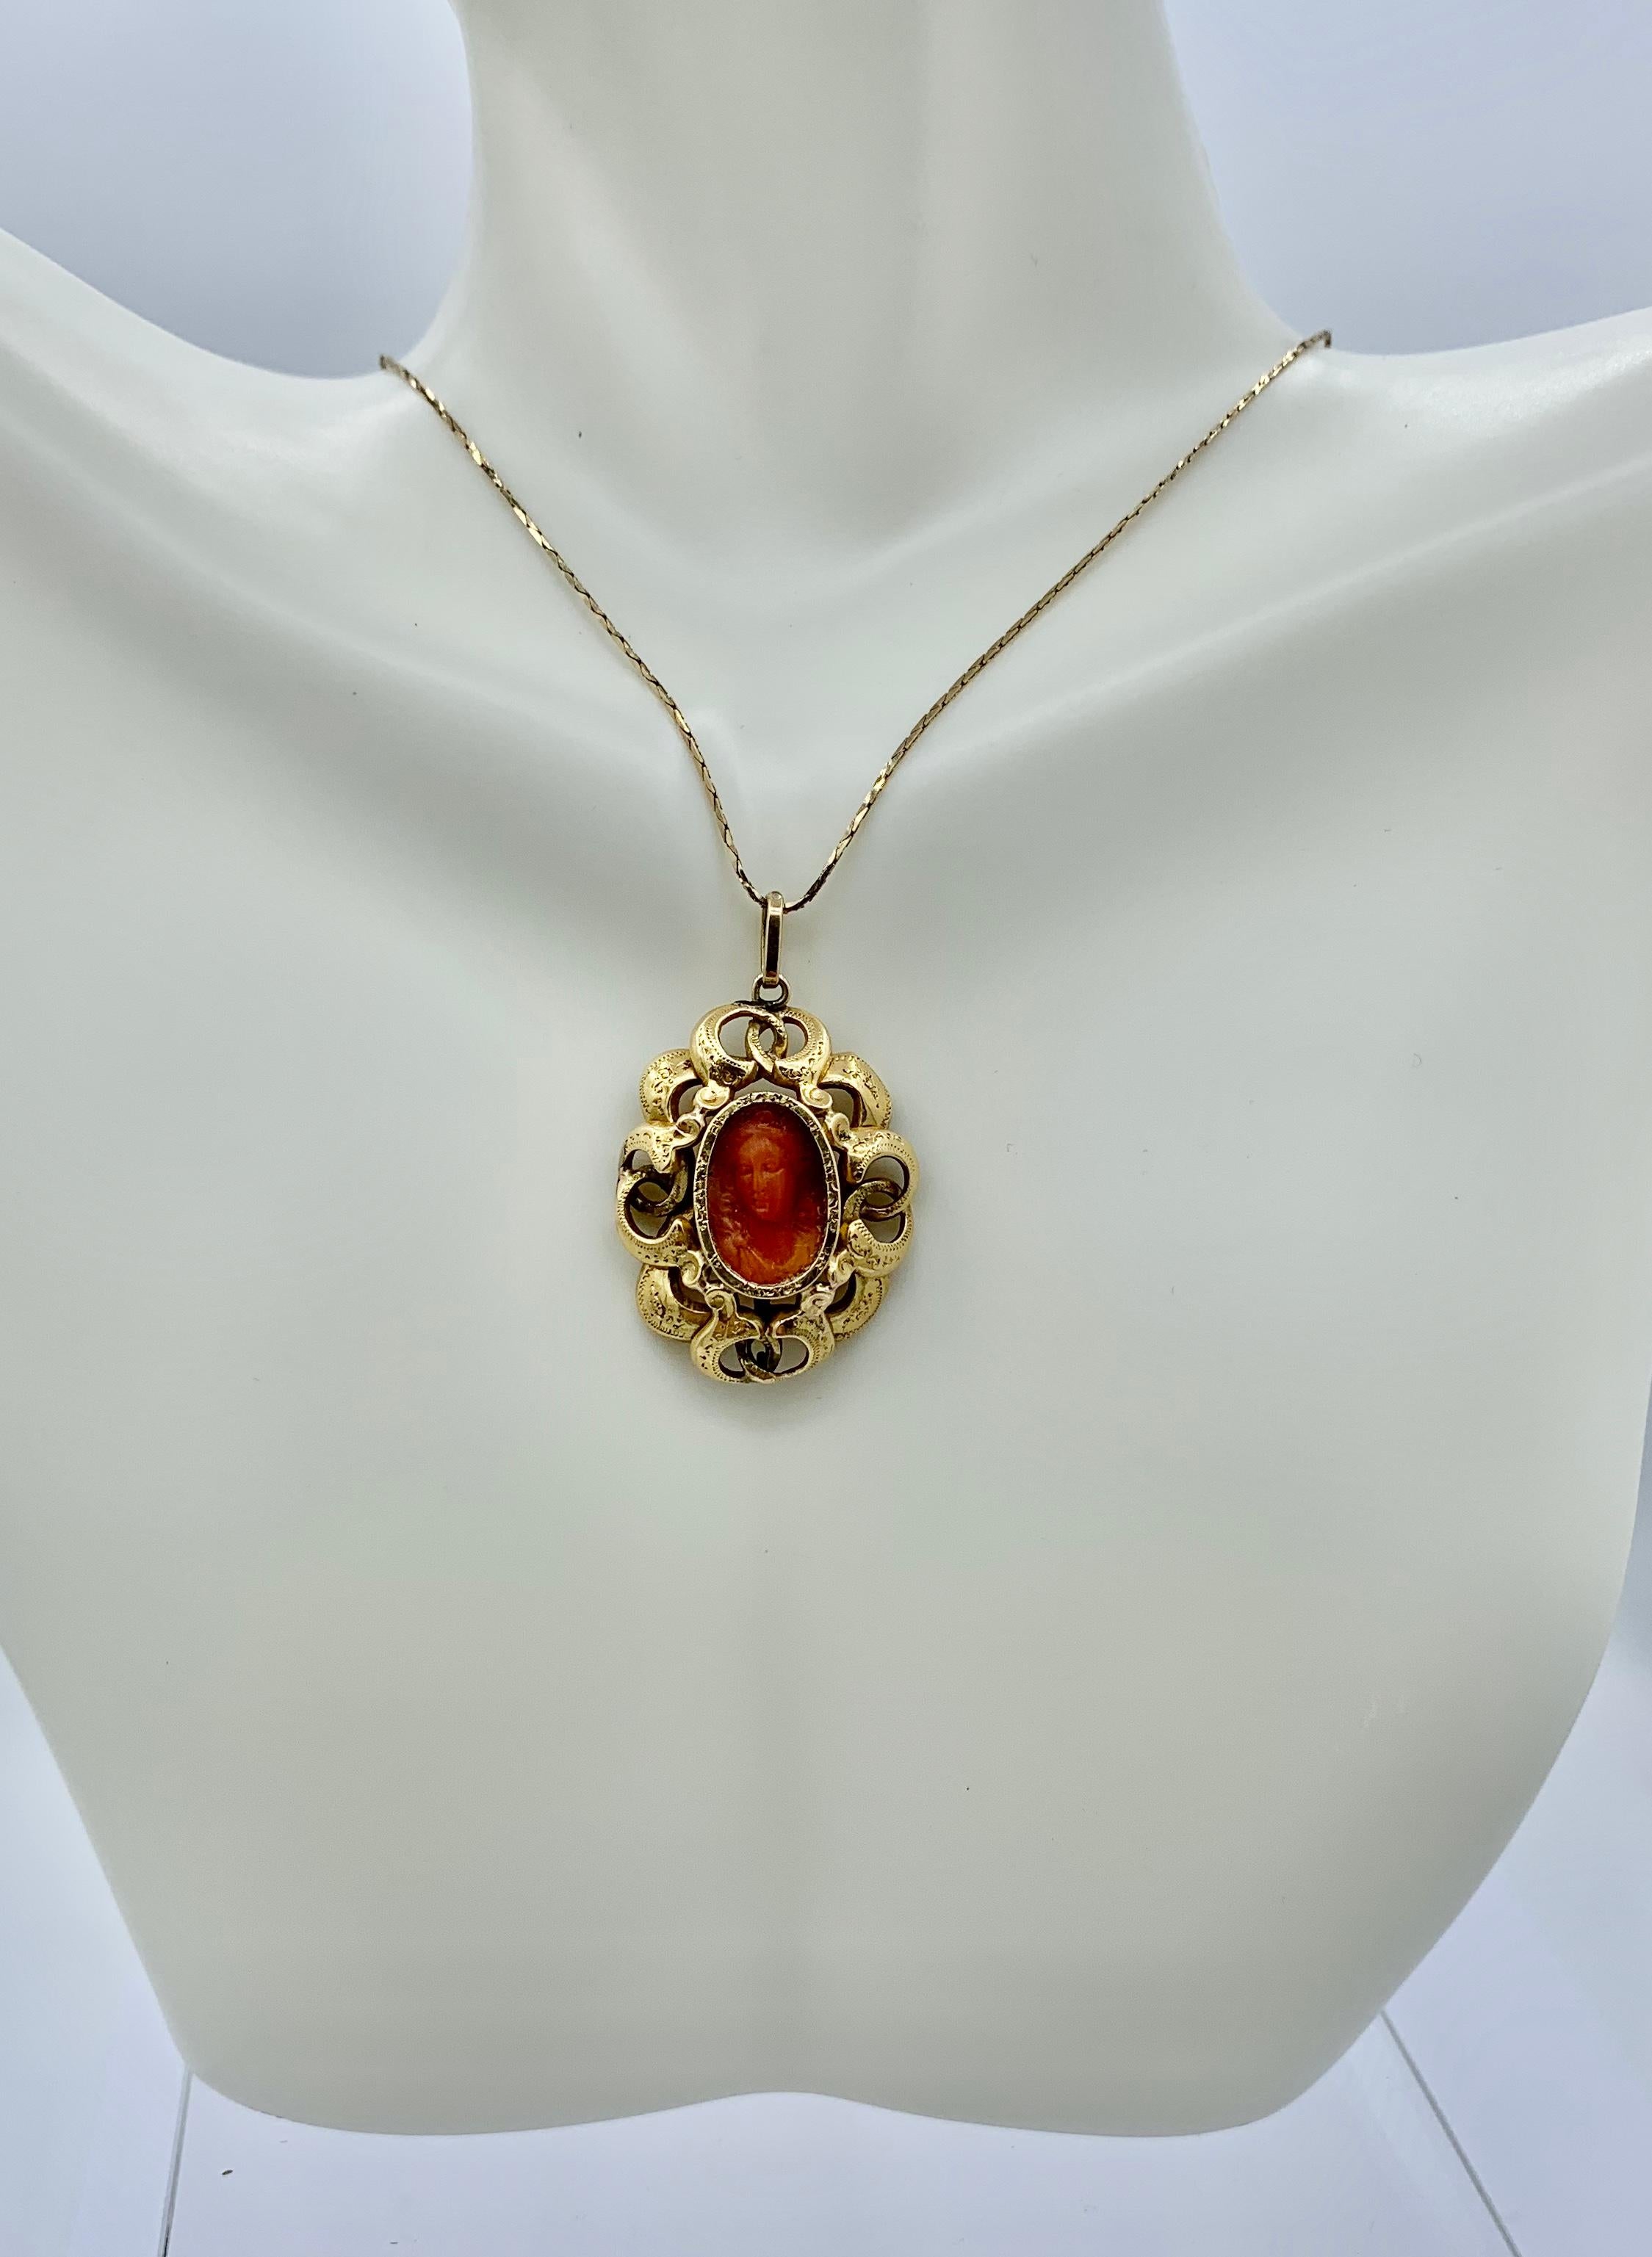 Il s'agit d'un pendentif camée corail en or 18 carats datant de l'époque géorgienne ou victorienne. Le camée en corail est exquis avec une belle sculpture d'une femme classique.   La couleur du corail est un magnifique rouge-orange.  Le visage de la